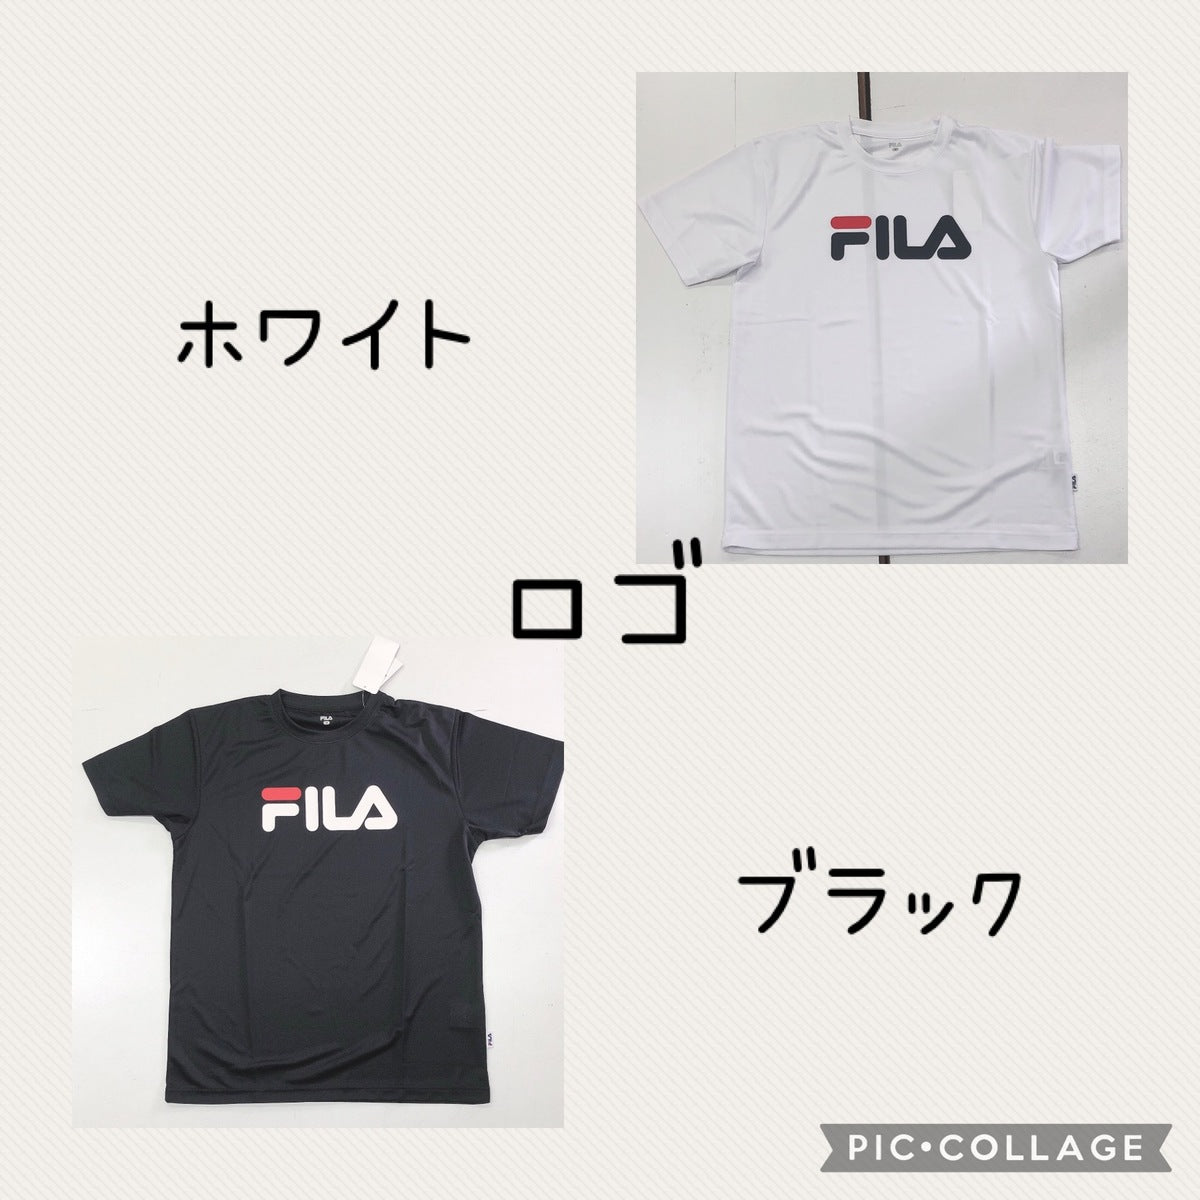 【FILA】 Tシャツ スポーツウェア M サイズ ネイビー ブラック 黒 DRY ドライ加工生地 夏